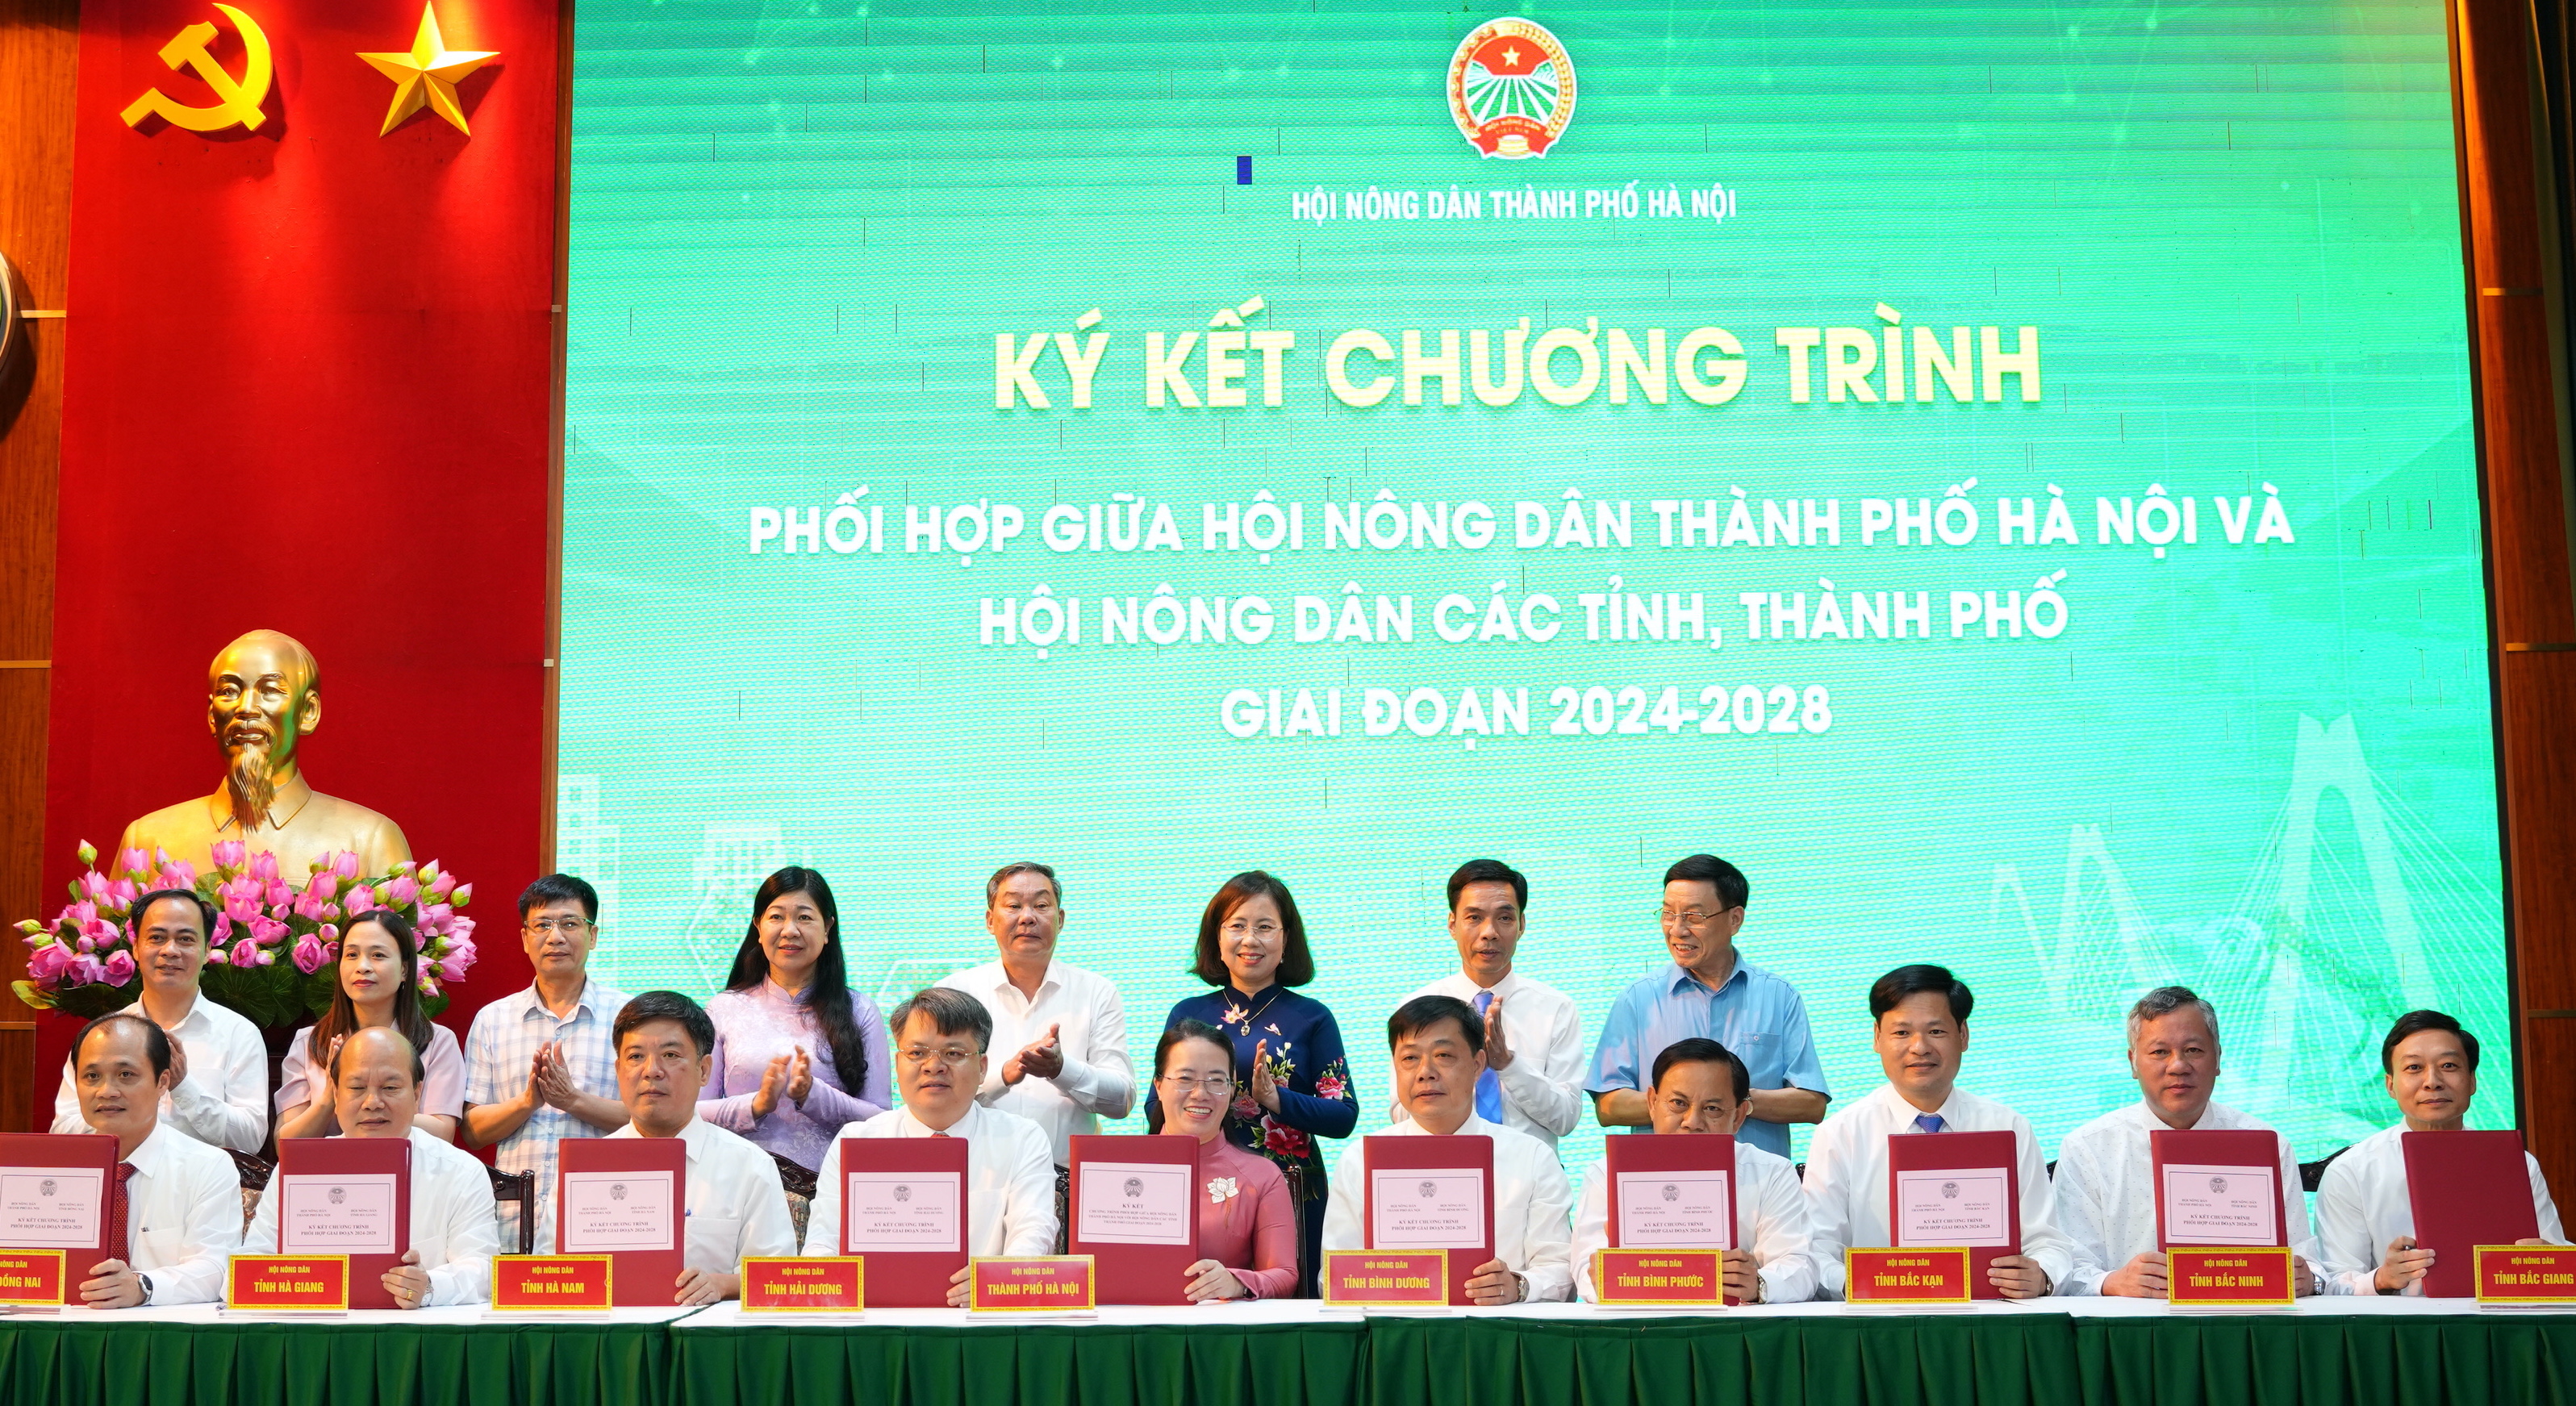 Hội Nông dân TP Hà Nội và Hội Nông dân 36 tỉnh, thành ký kết chương trình phối hợp giai đoạn 2024-2028- Ảnh 2.